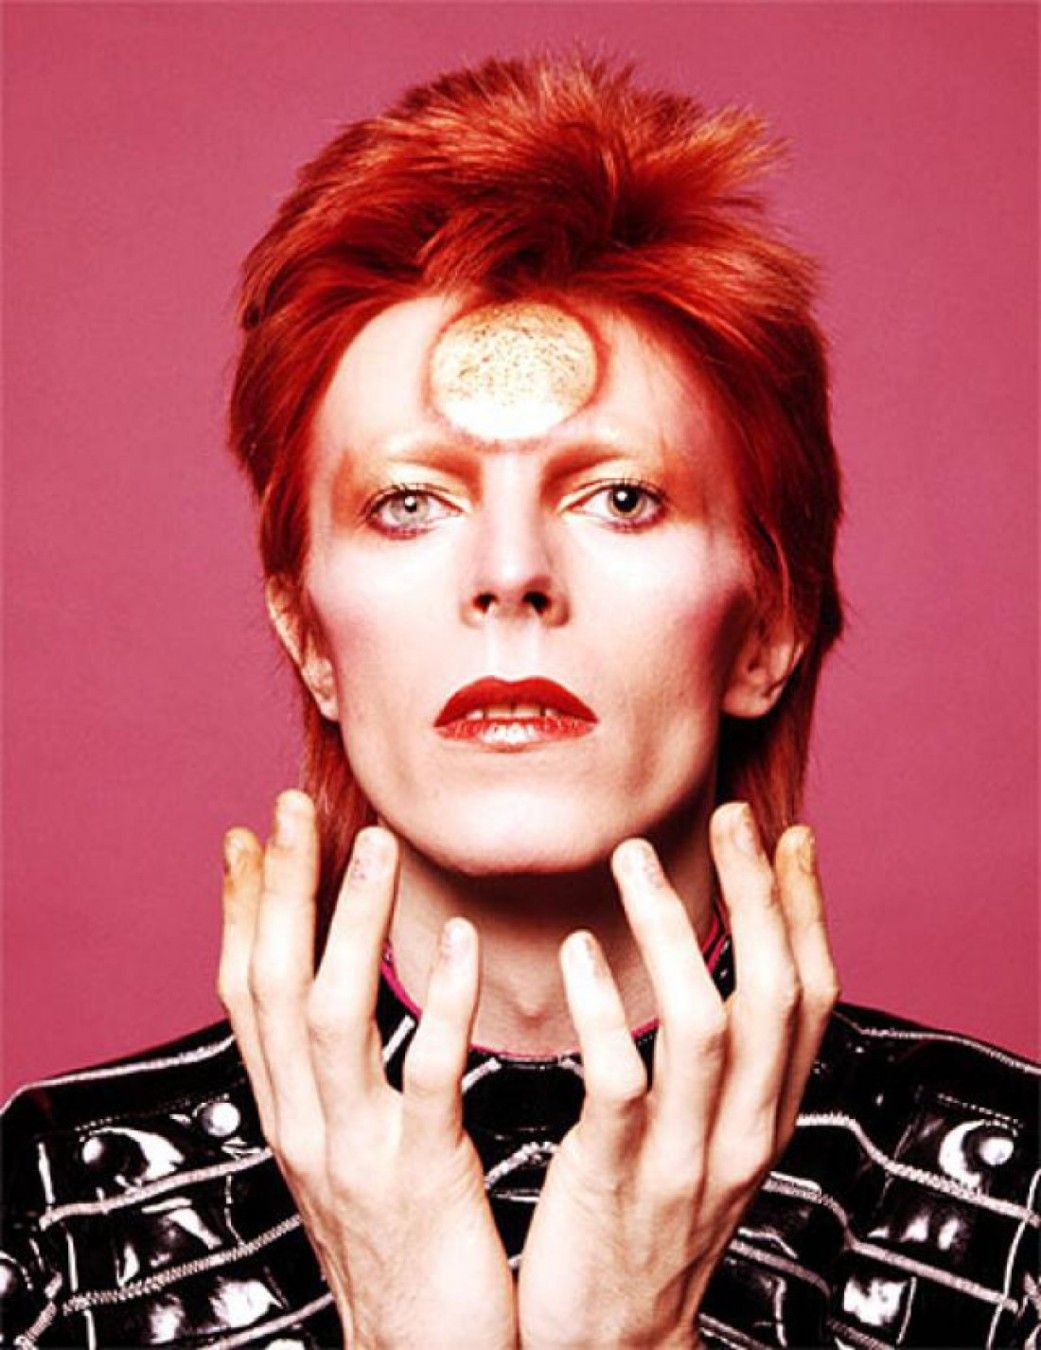 David Bowie portrait